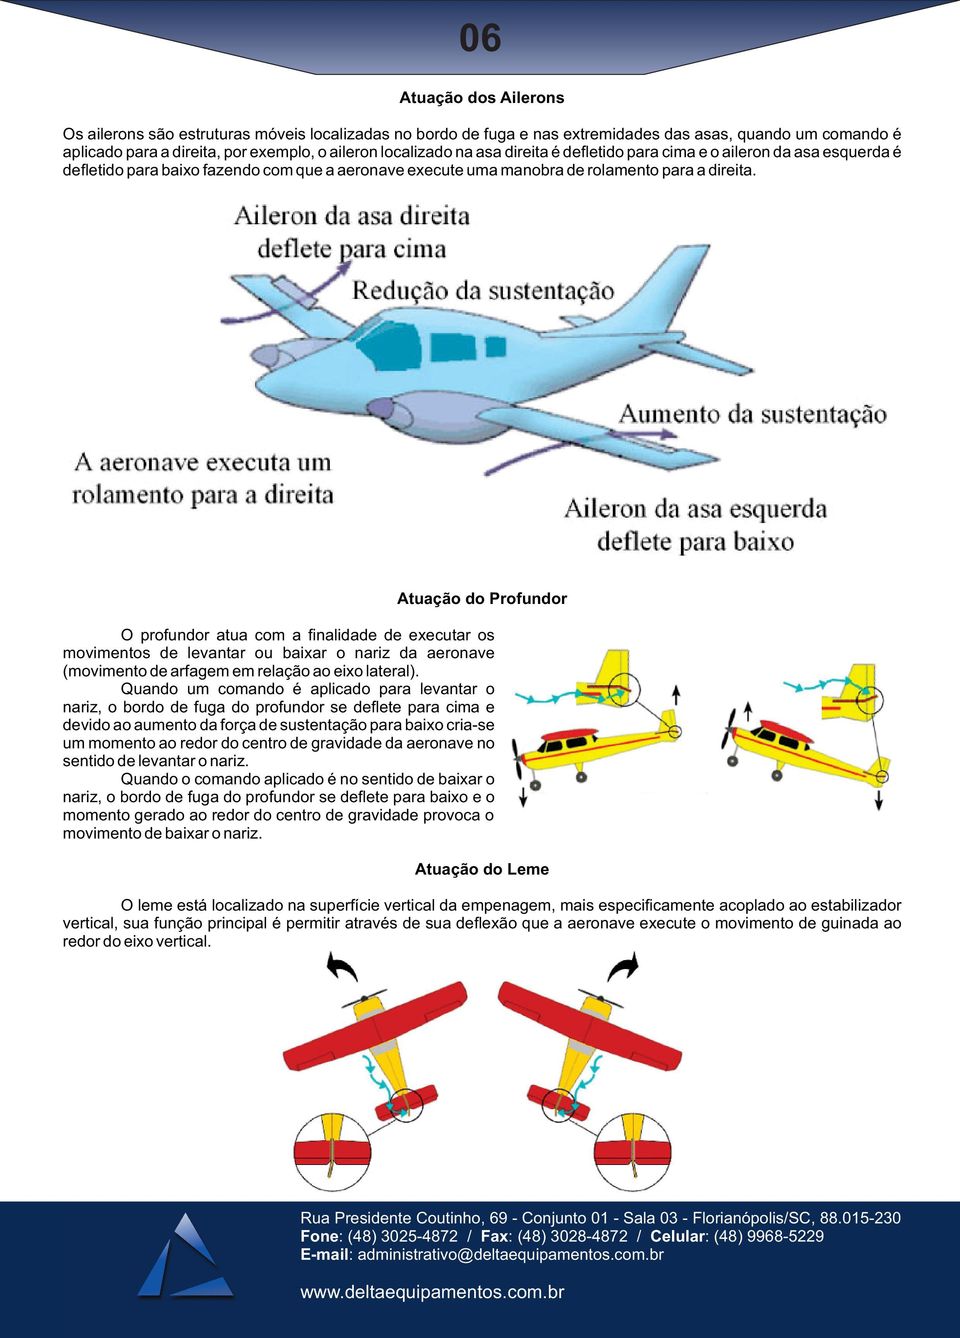 Atuação do Profundor O profundor atua com a finalidade de executar os movimentos de levantar ou baixar o nariz da aeronave (movimento de arfagem em relação ao eixo lateral).